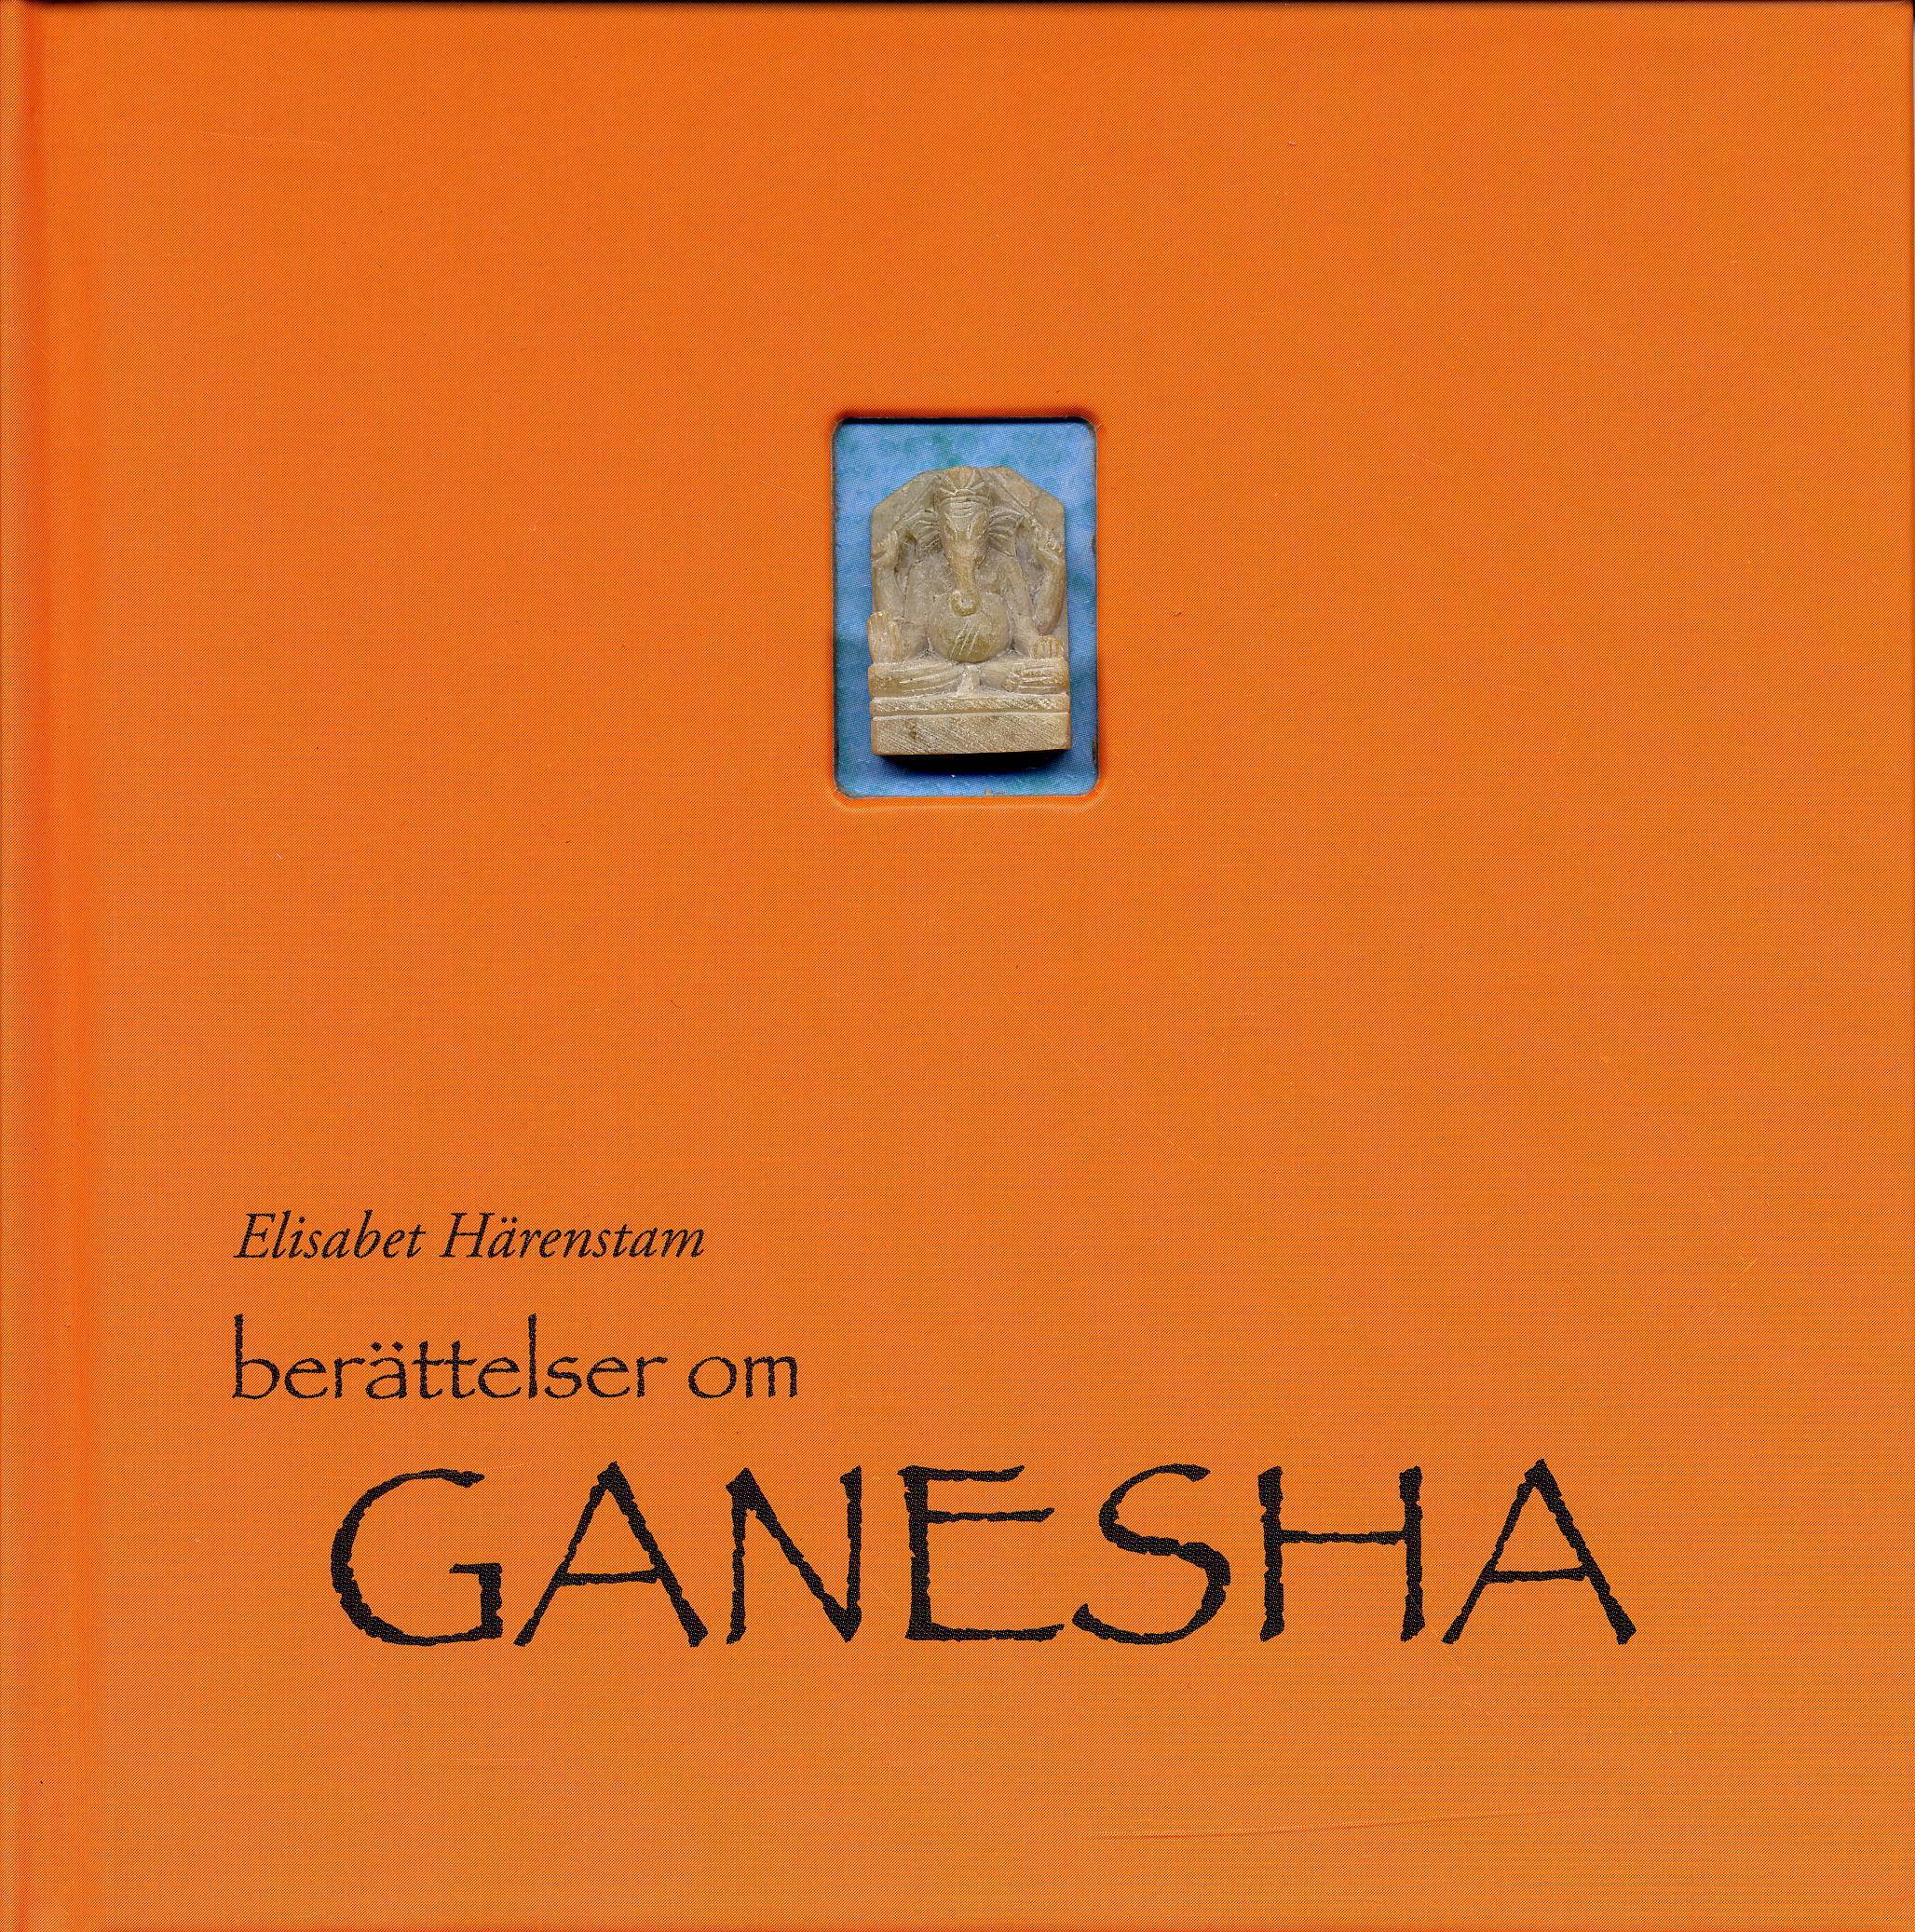 Berättelser om Ganesha